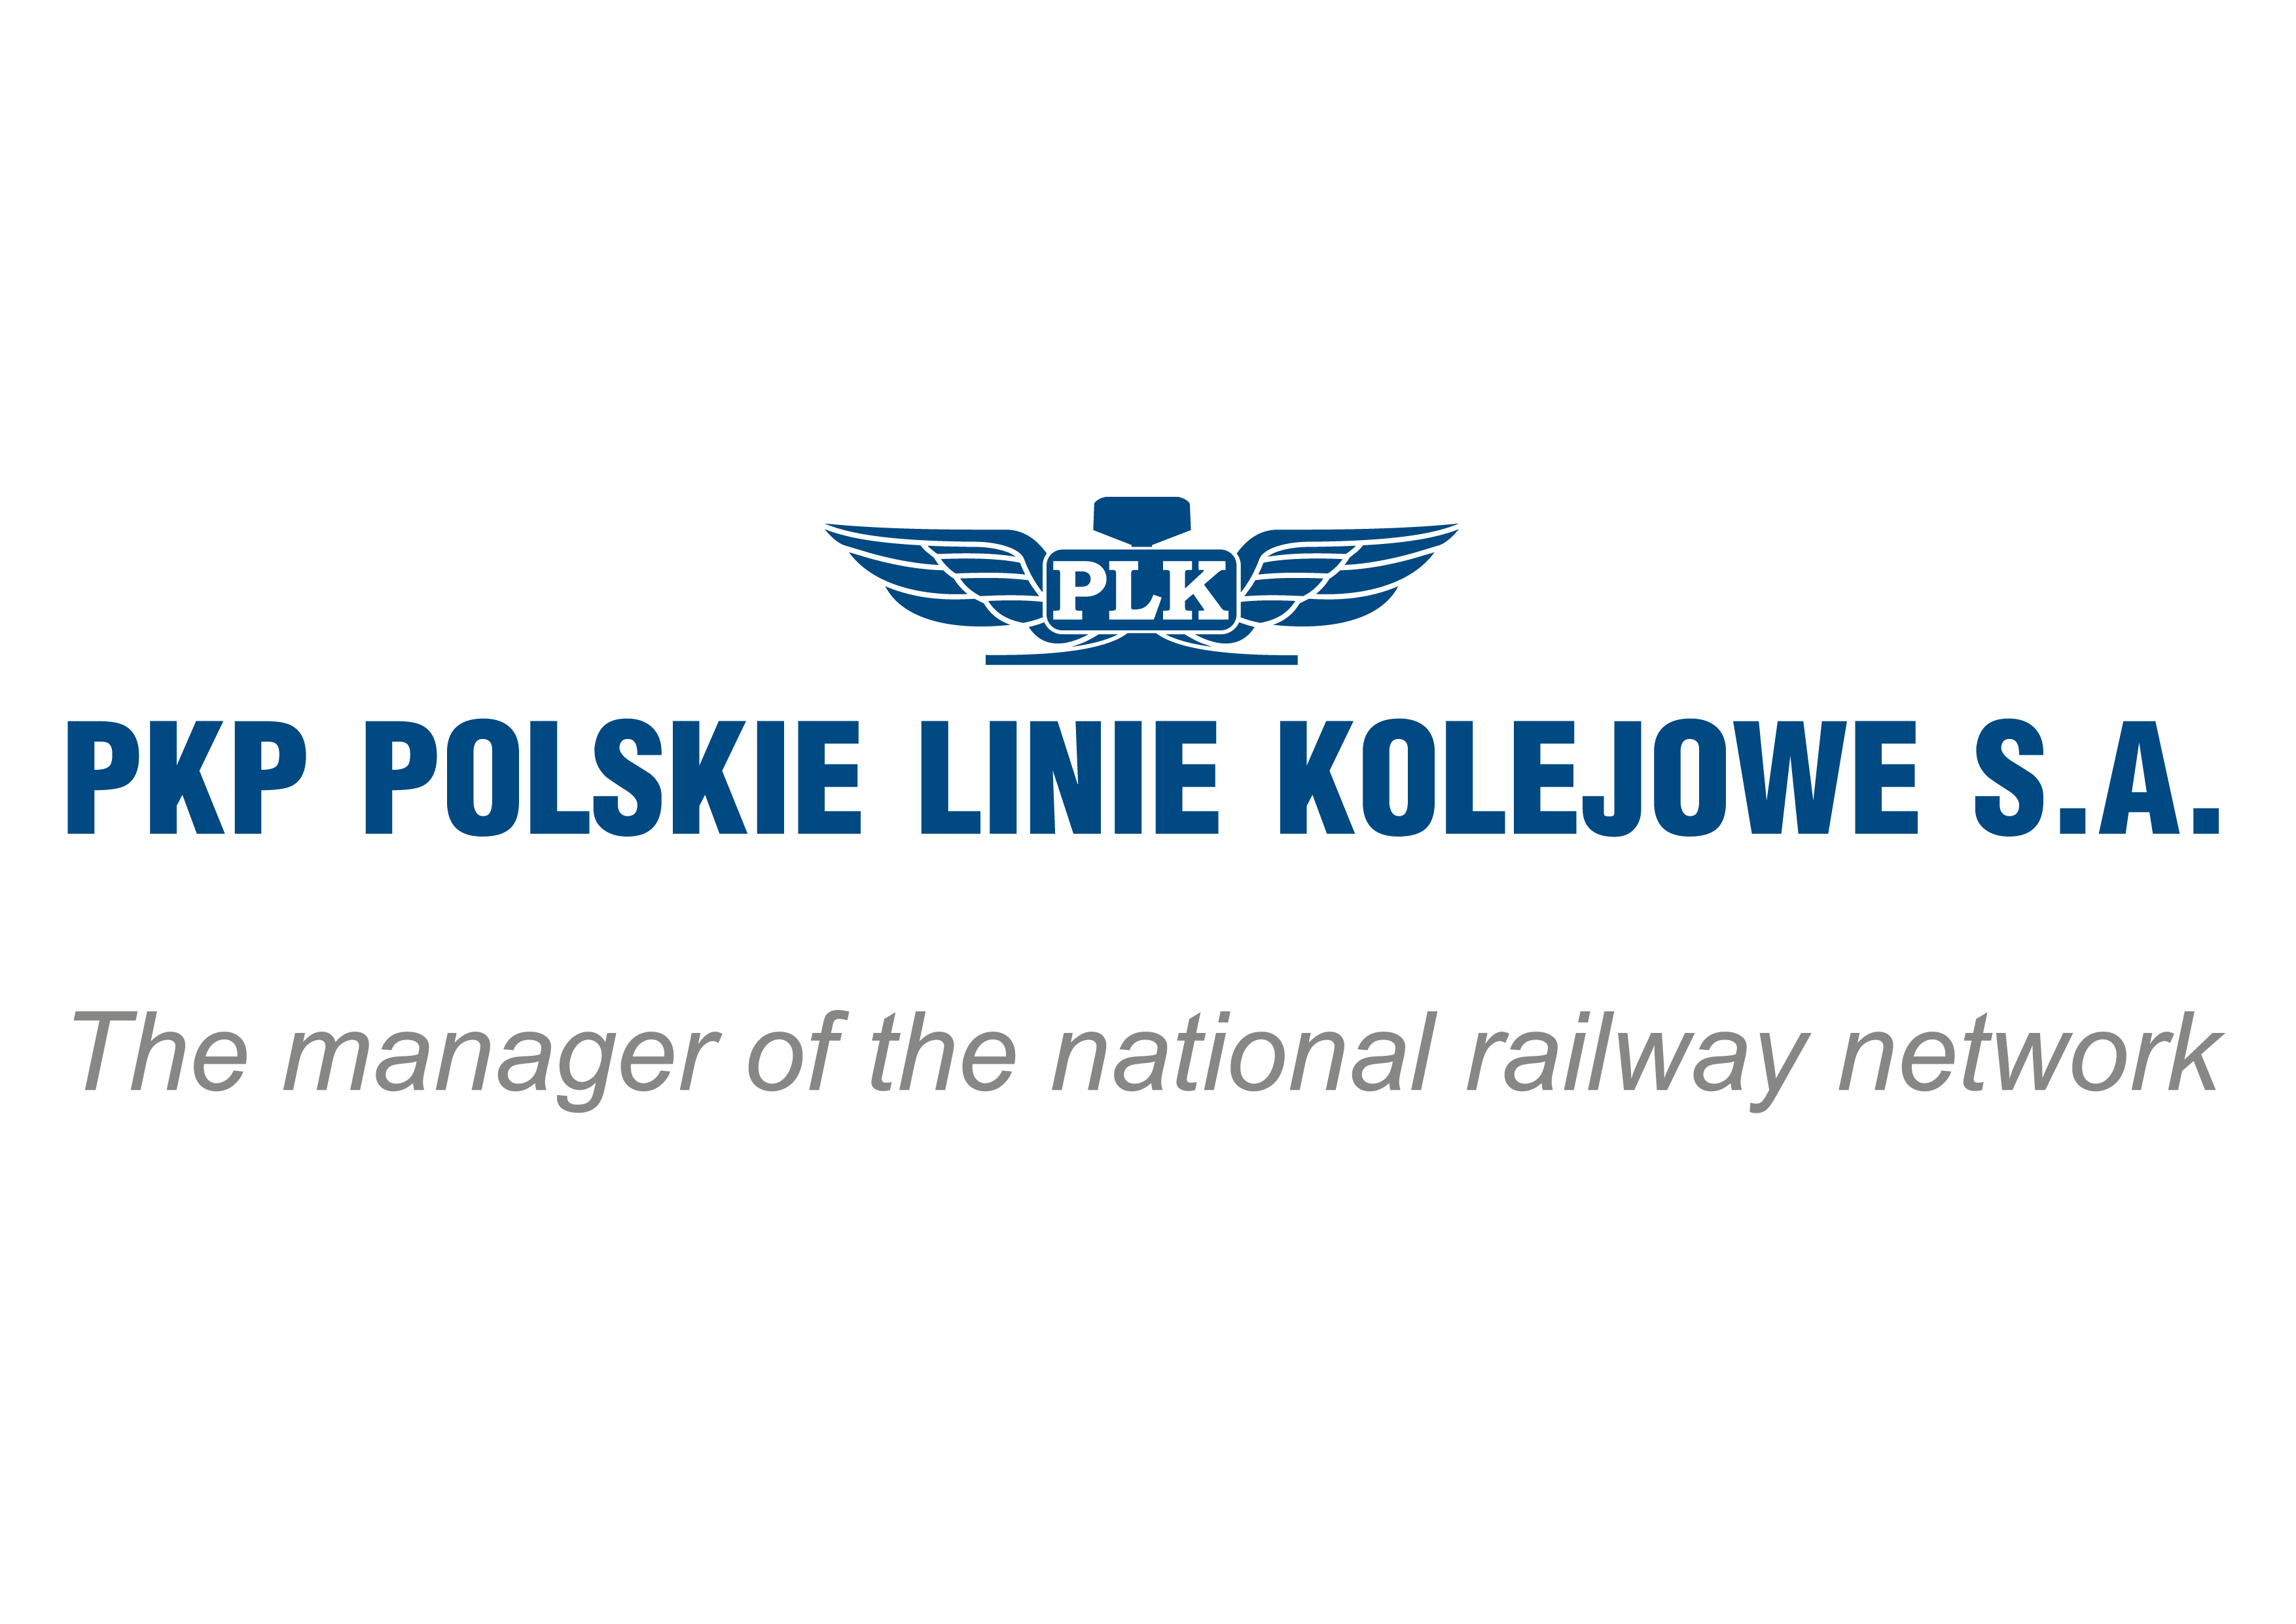 PKP Polskie Linie Kolejowe S.A. 